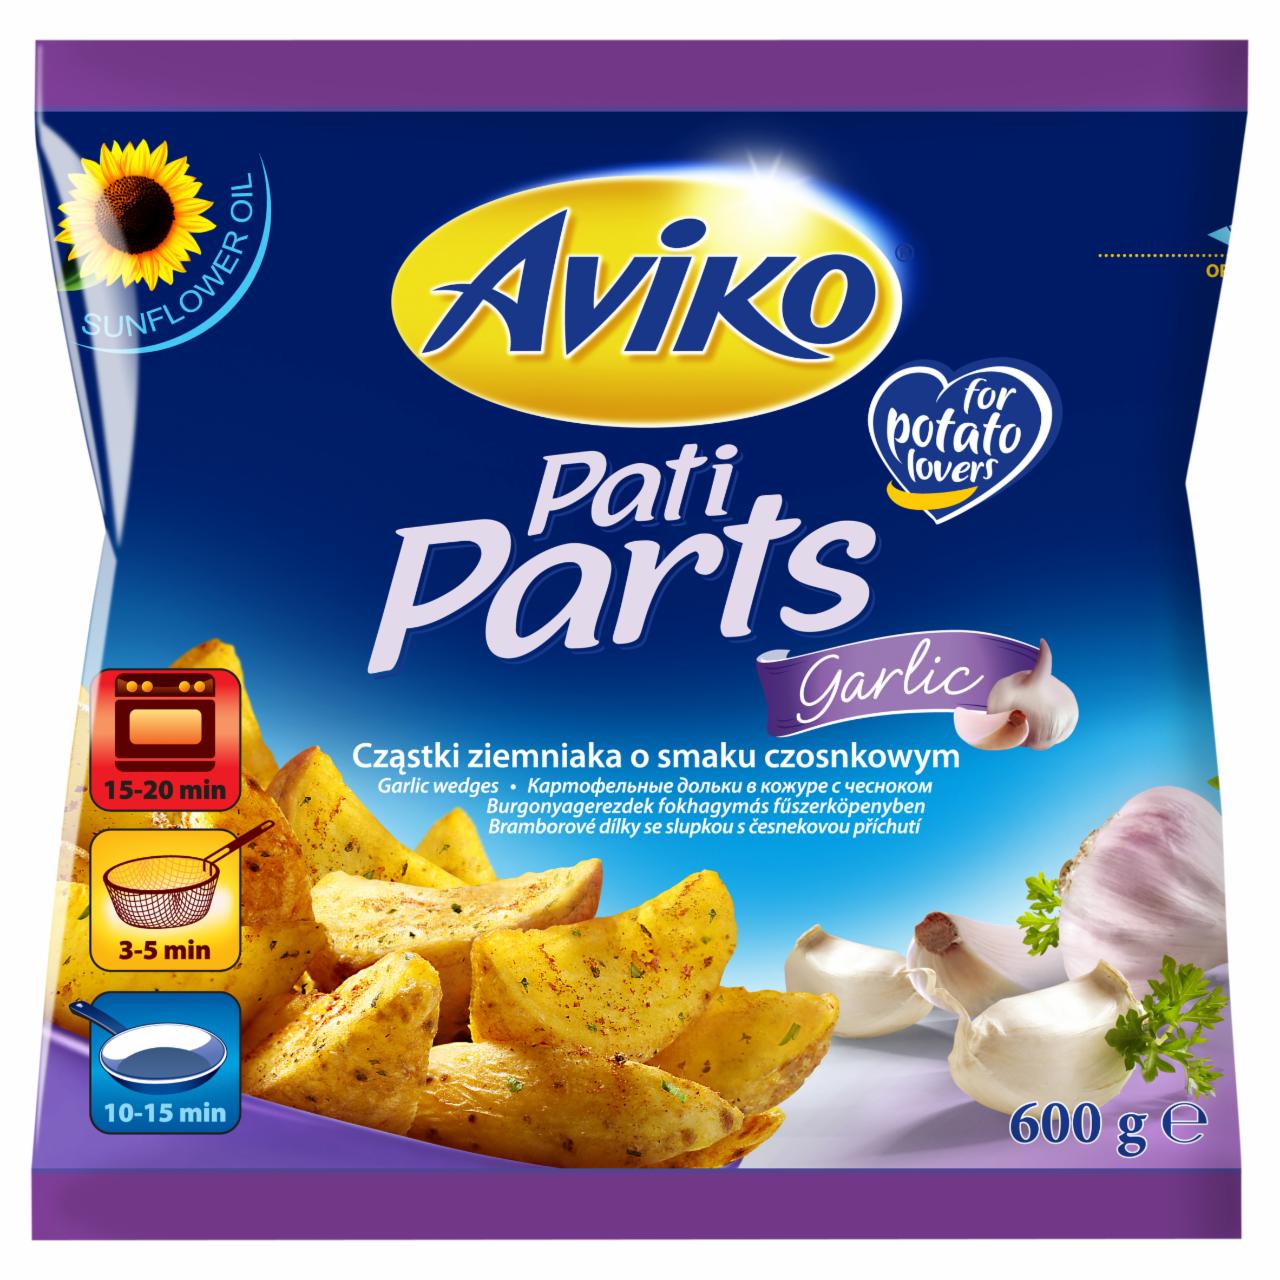 Zdjęcia - Pati Parts Garlic Cząstki ziemniaka o smaku czosnkowym Aviko